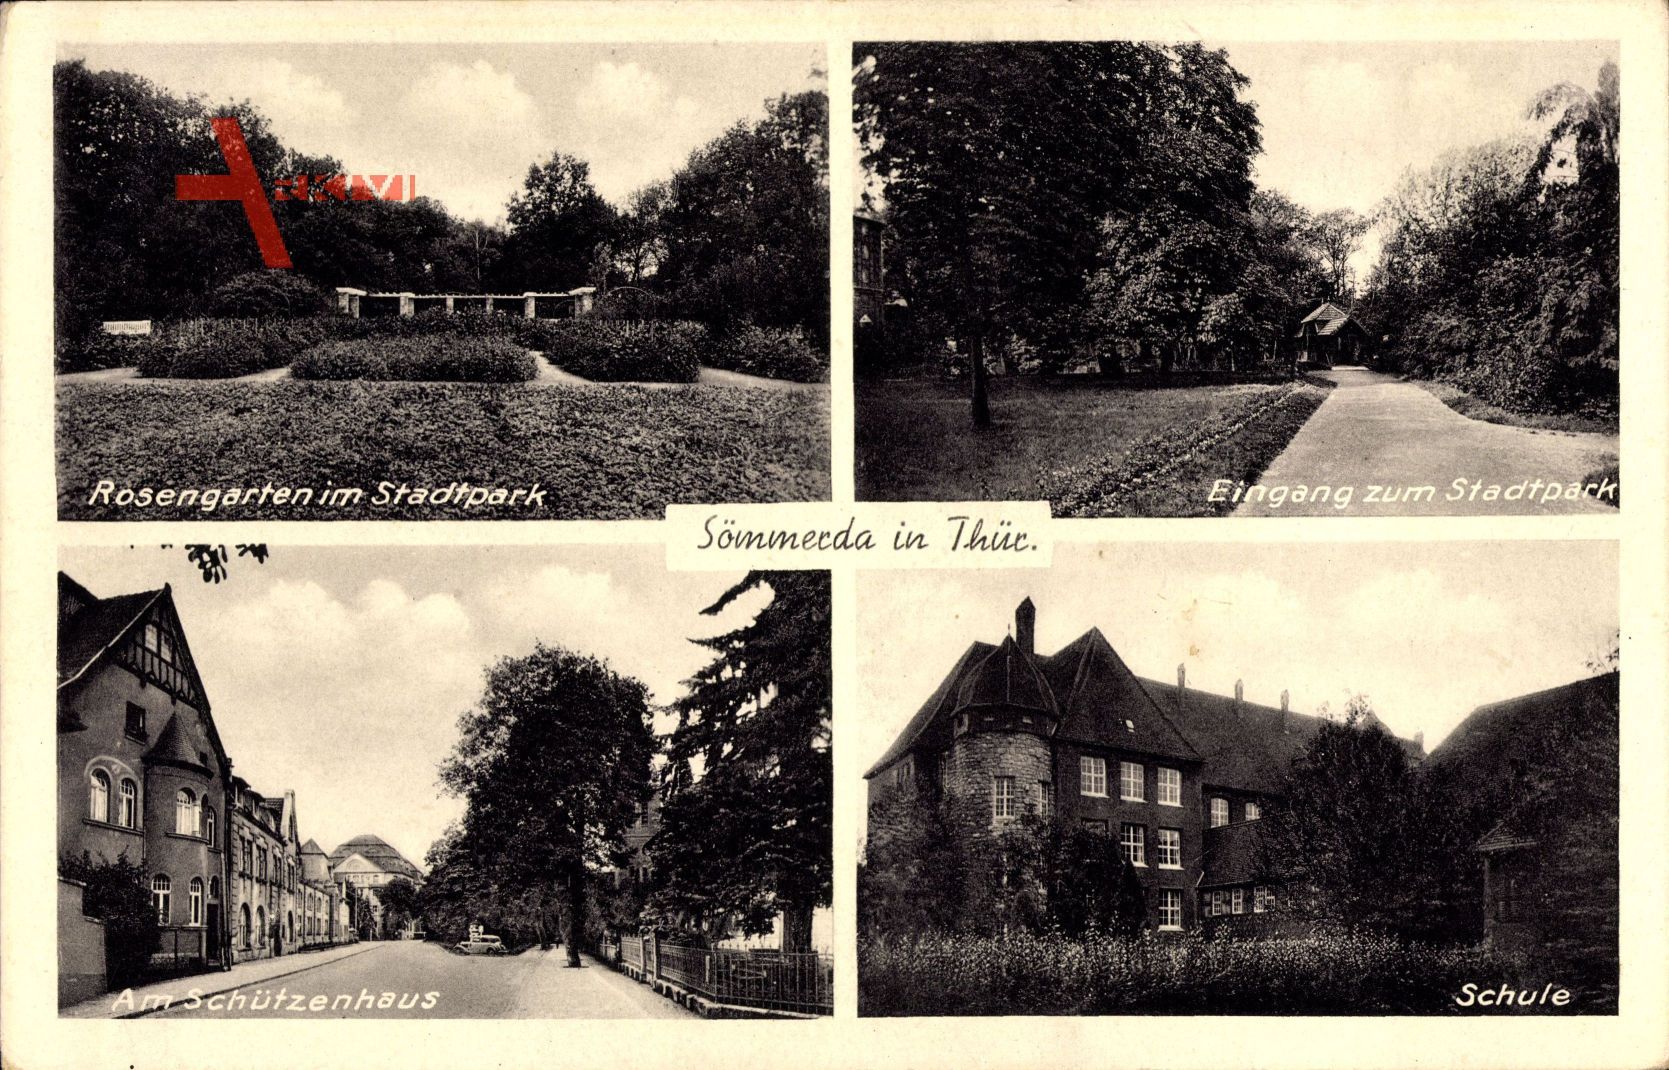 Sömmerda im Thüringer Becken, Rosengarten, am Schützenhaus, Schule, Park